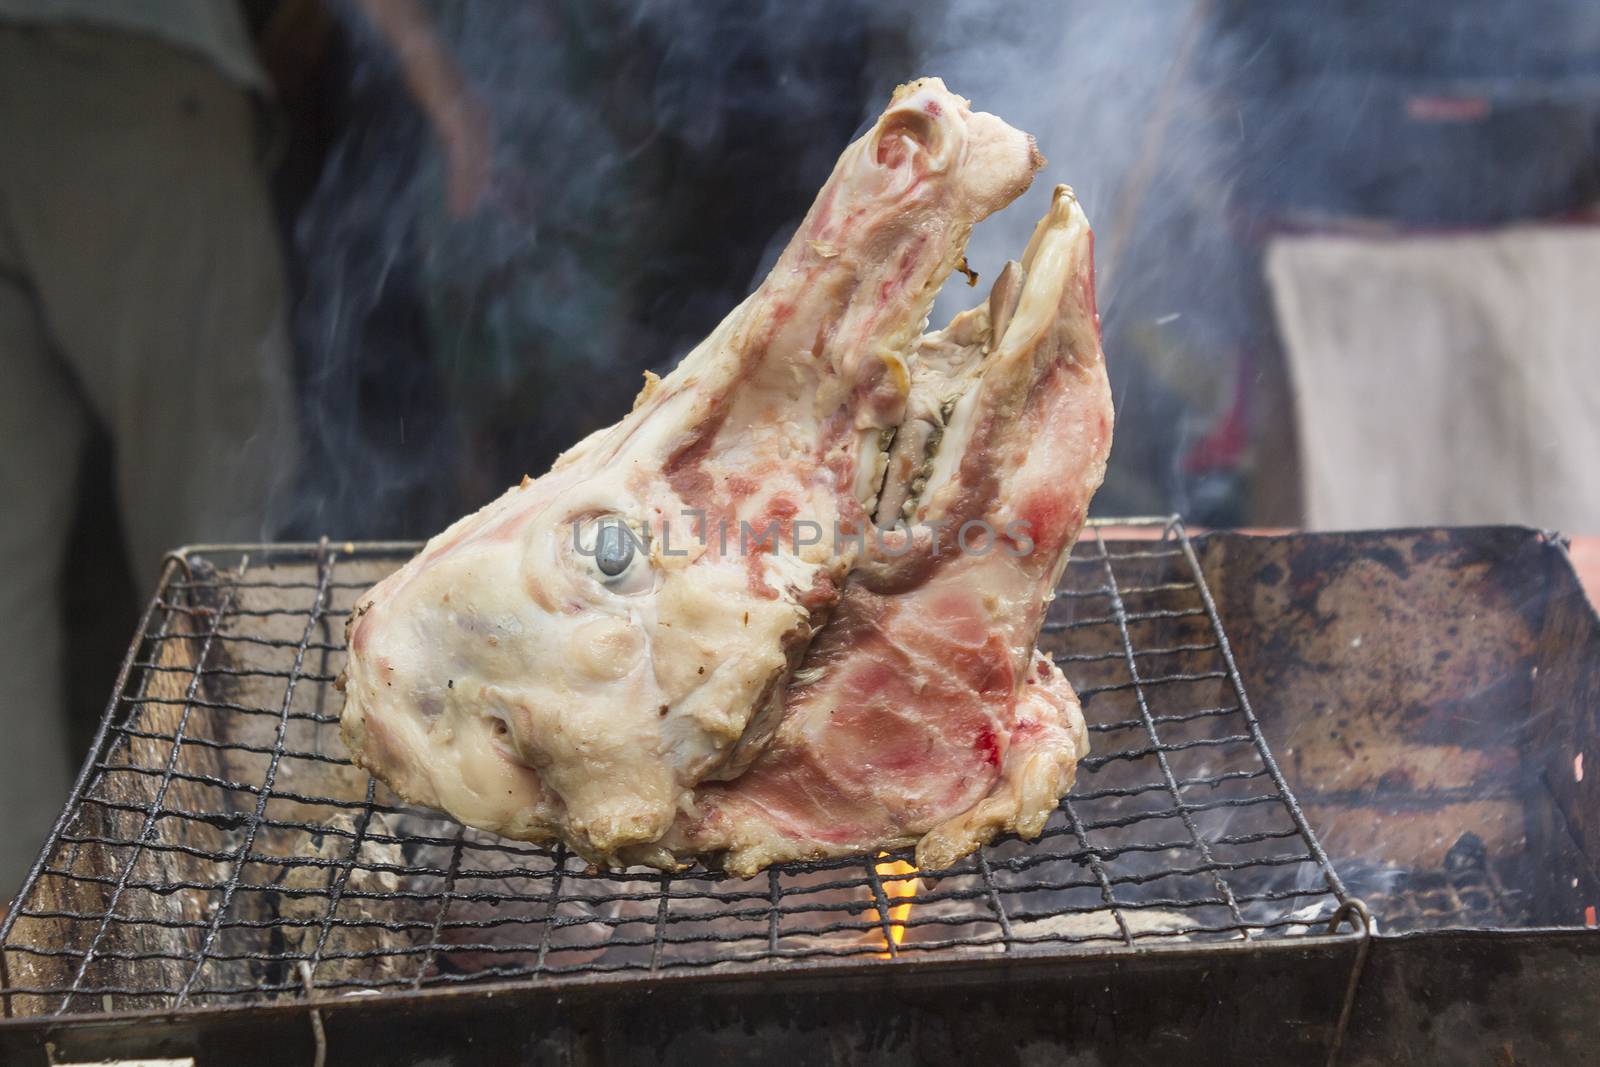 Roast pig's head on grill